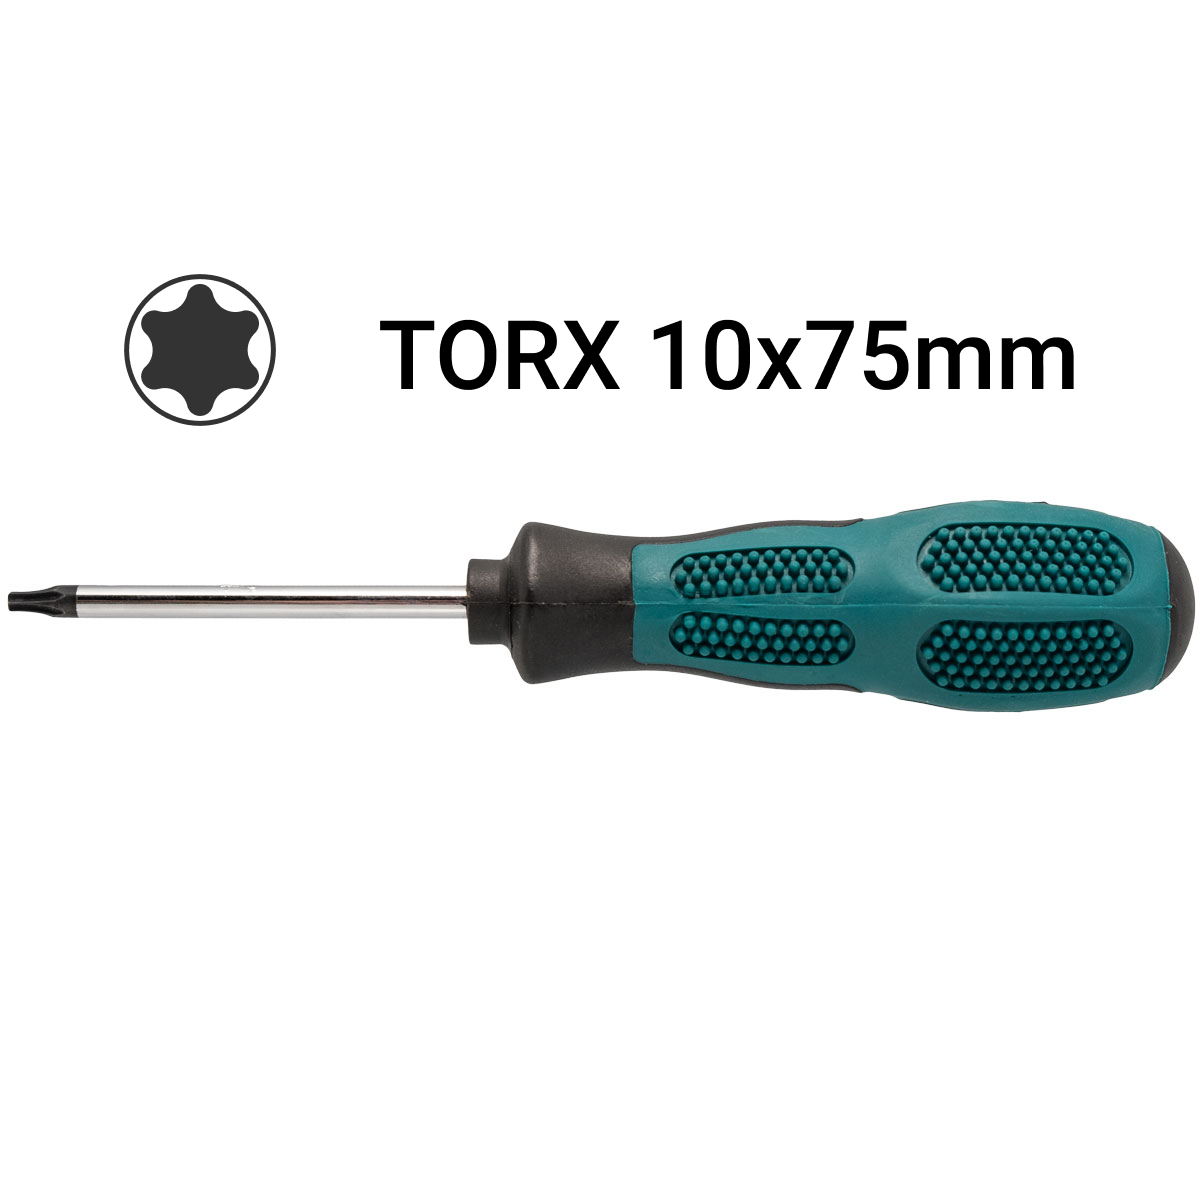 Tornavis Pro-soft Torx T10x75mm